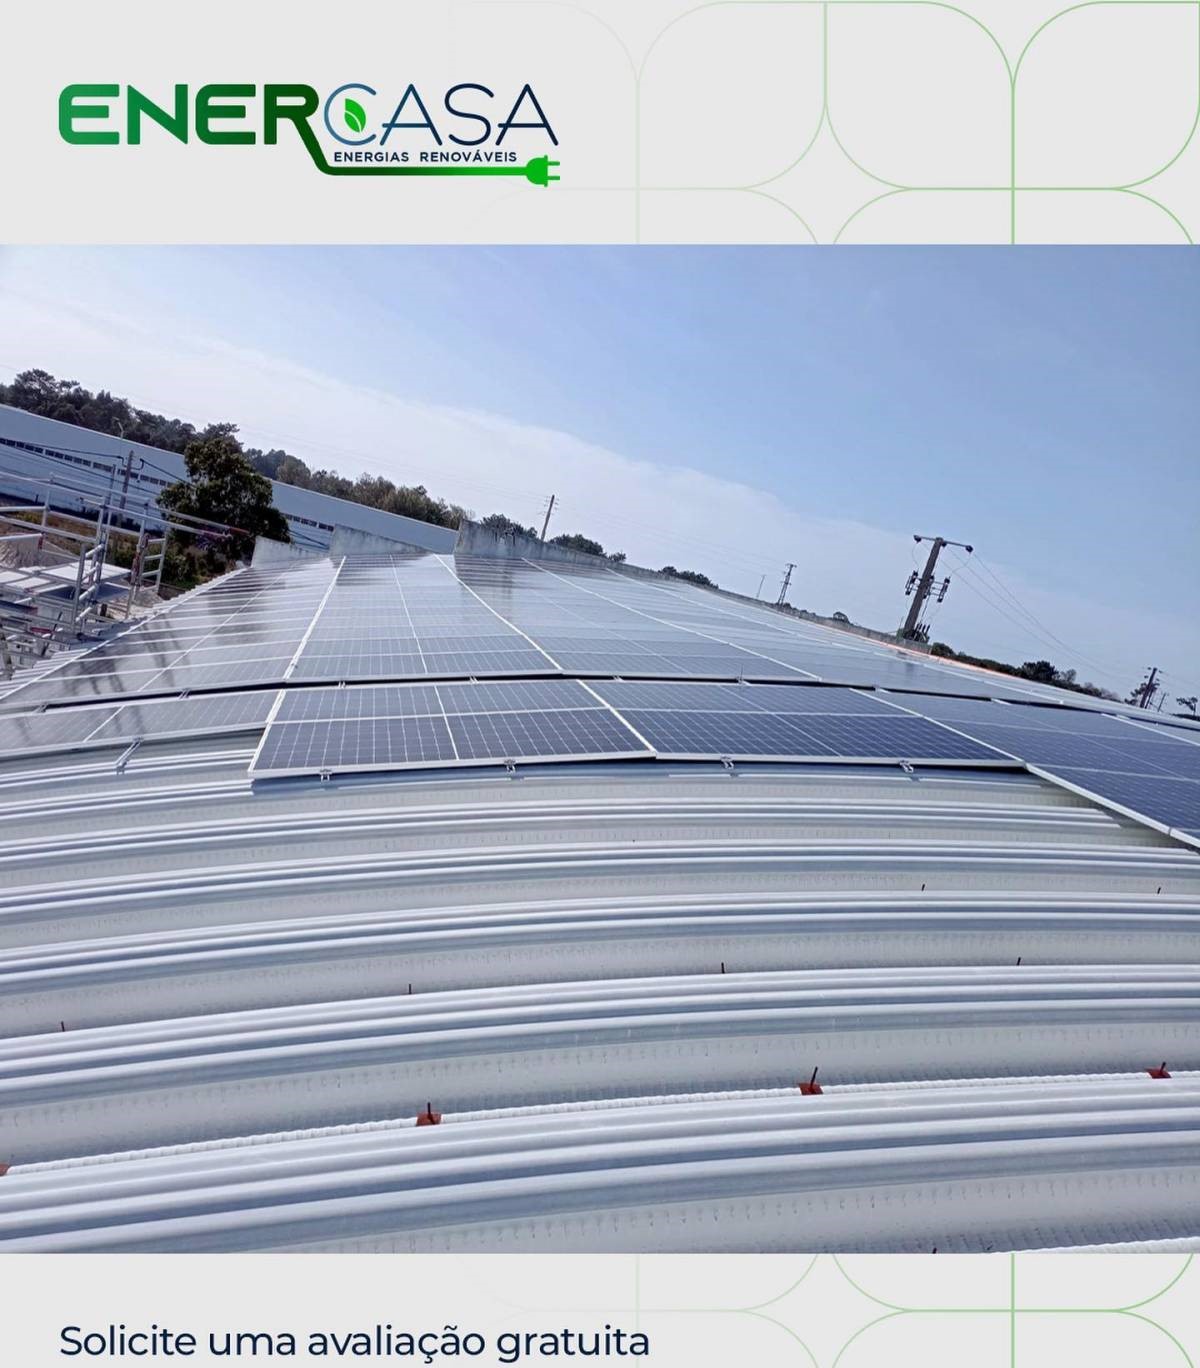 ENERCASA - Energias Renováveis e Climatização, Lda - Braga - Limpeza ou Inspeção de Painel Solar